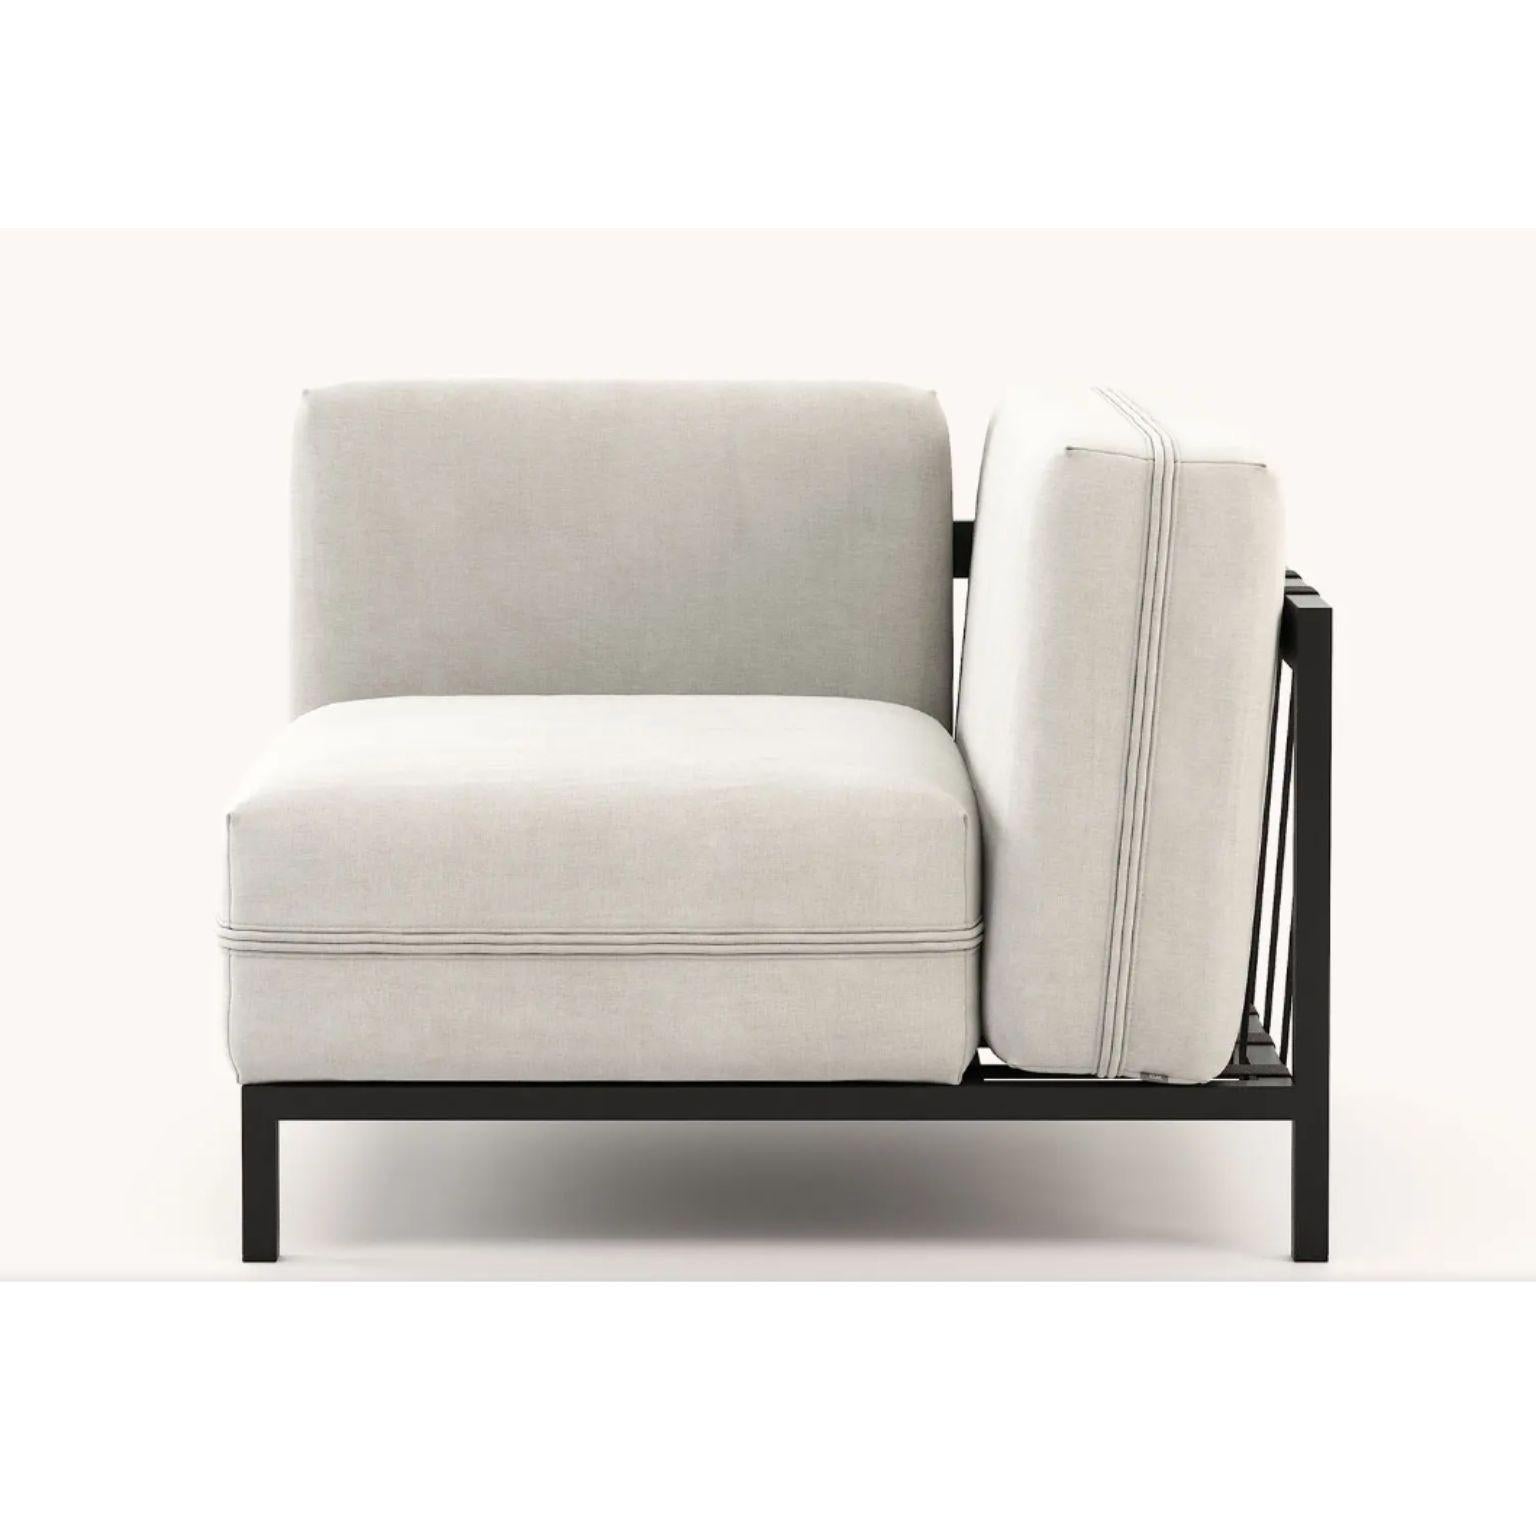 Post-Modern Bondi Corner Chair by Domkapa For Sale